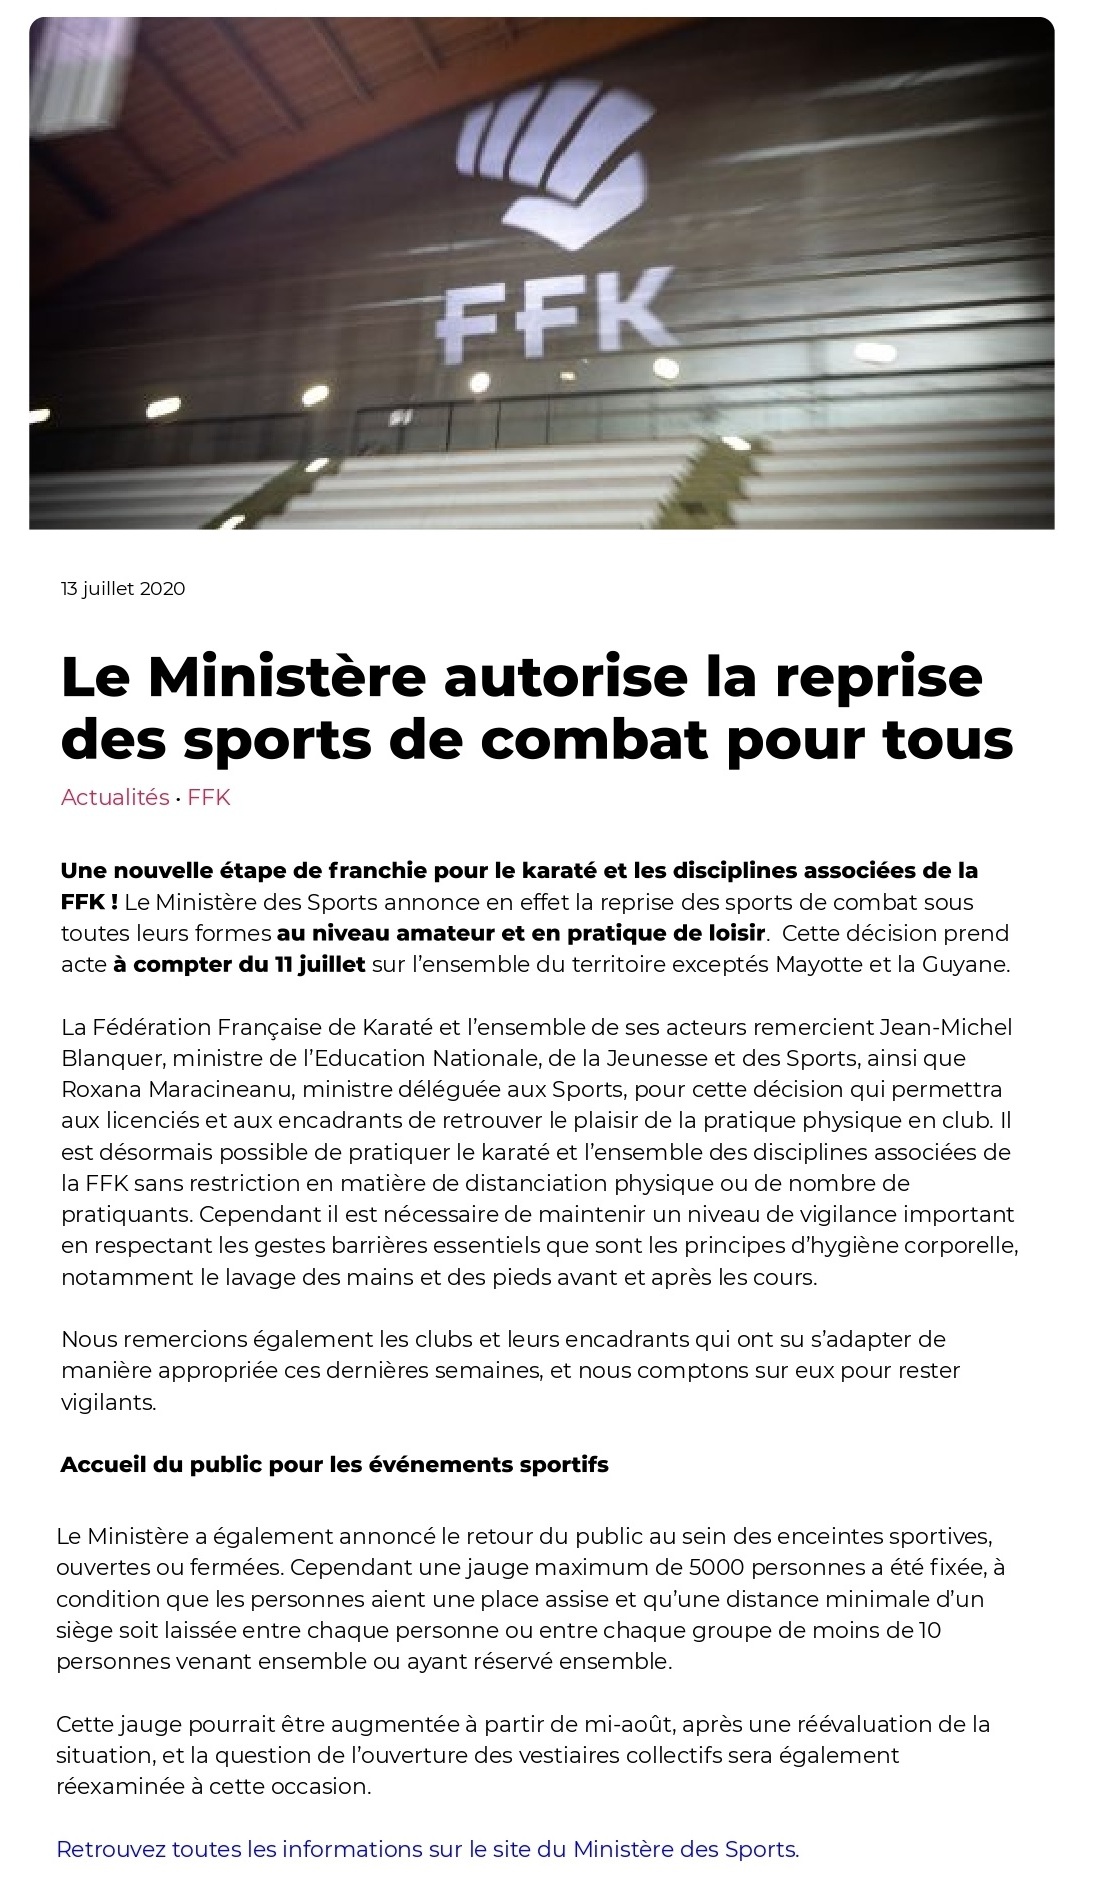 Le Ministere autorise la reprise des sports de combat pour tous